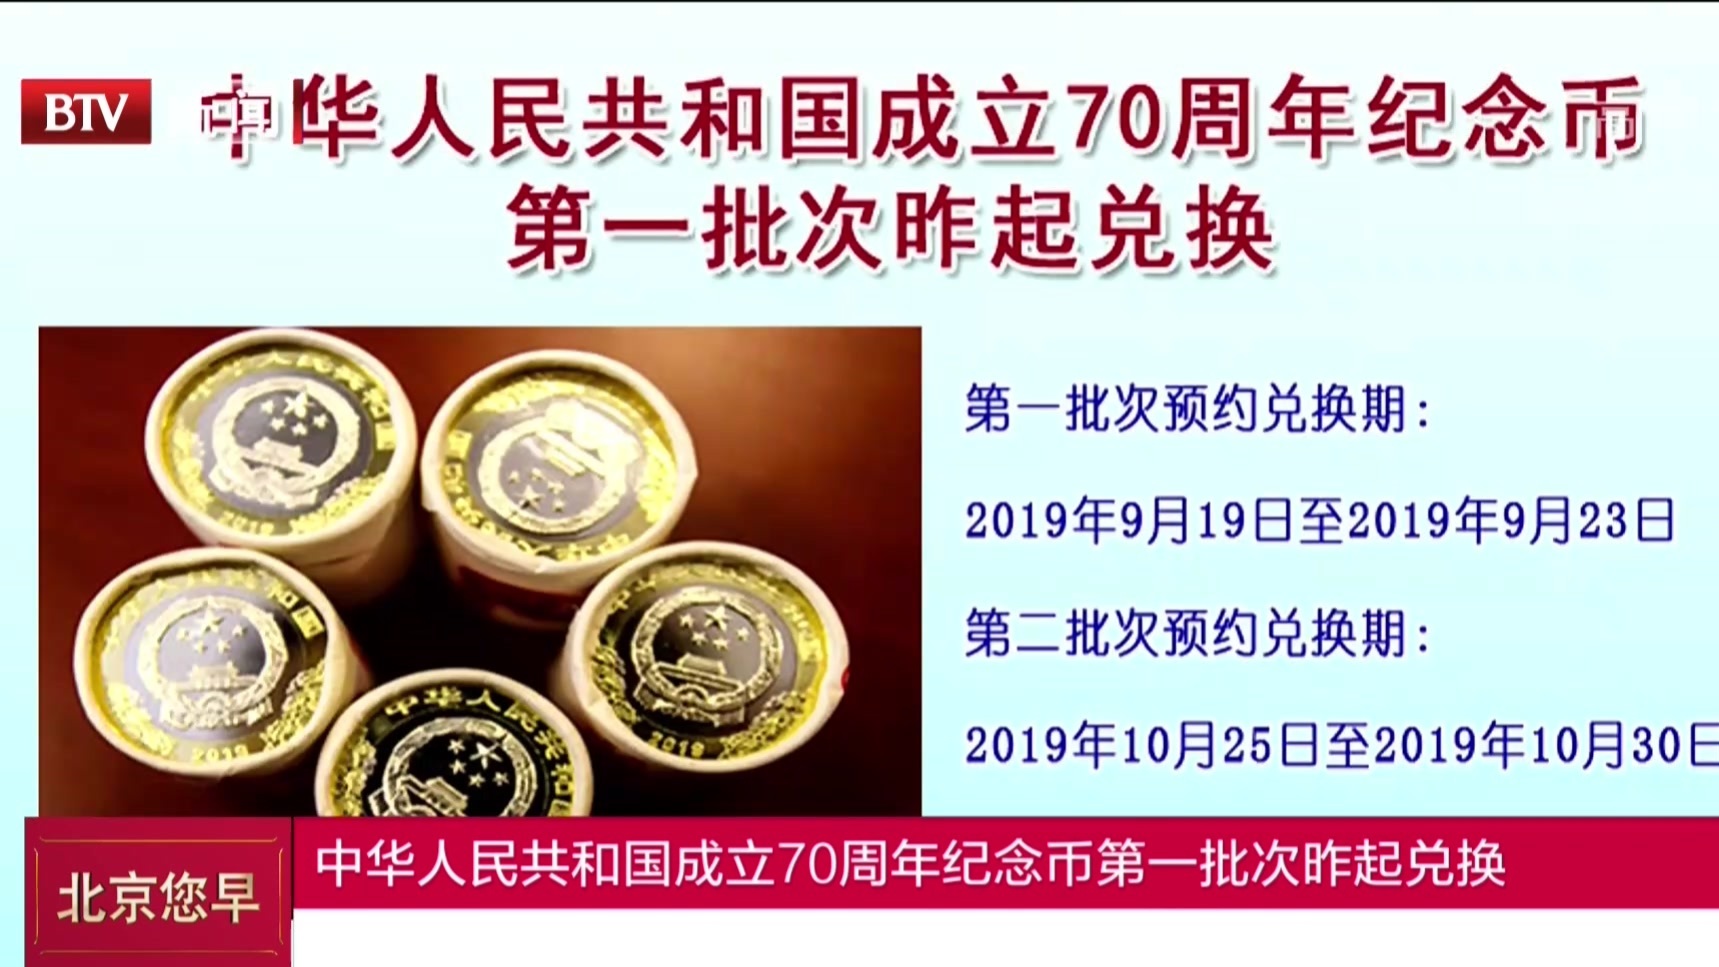 中华人民共和国成立70周年纪念币第一批次昨起兑换